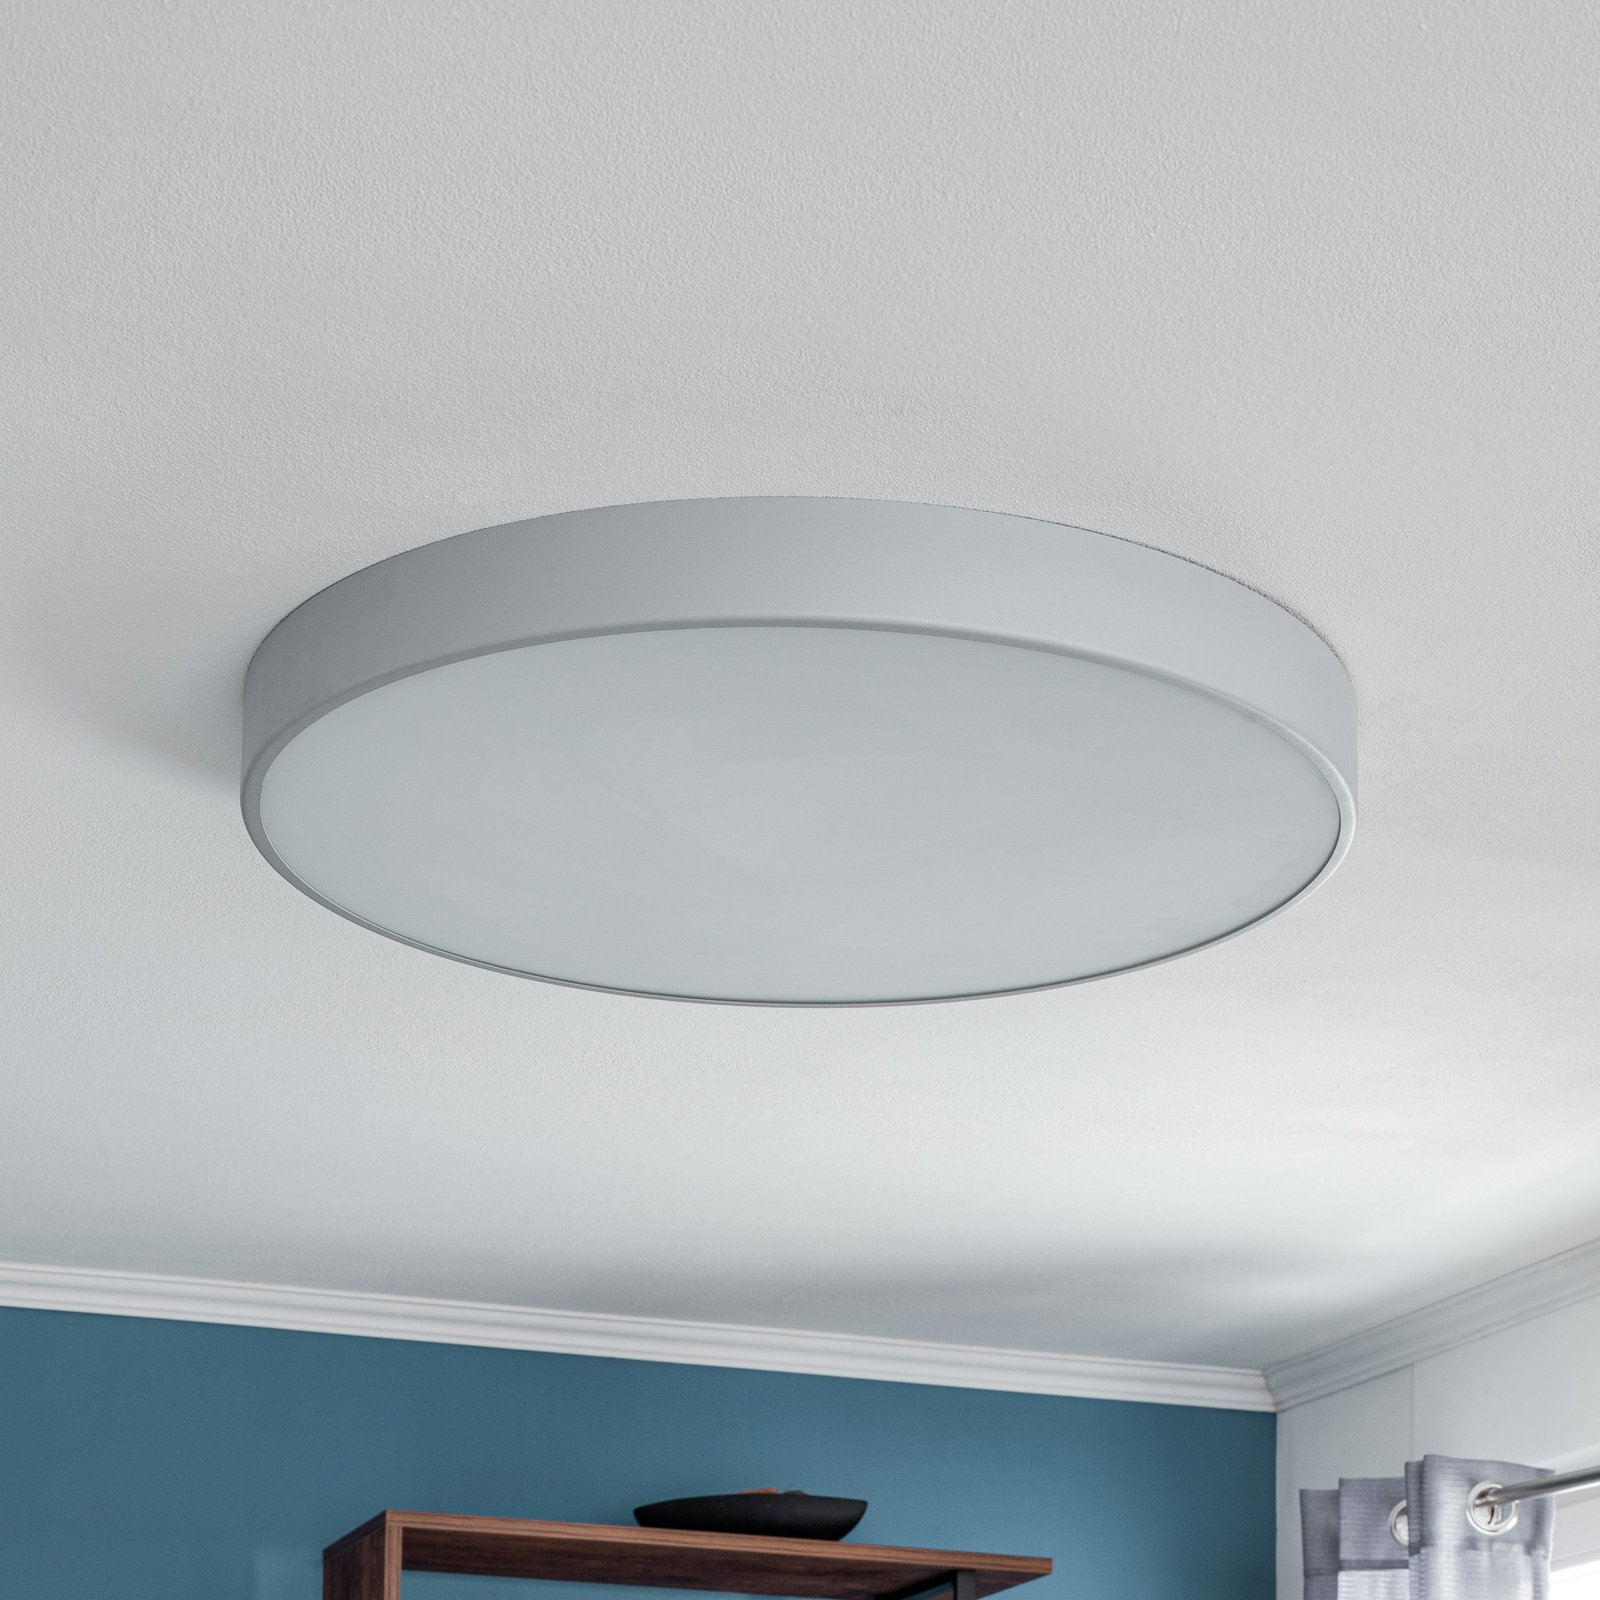 Cleo 800 ceiling light, sensor, Ø 78 cm grey